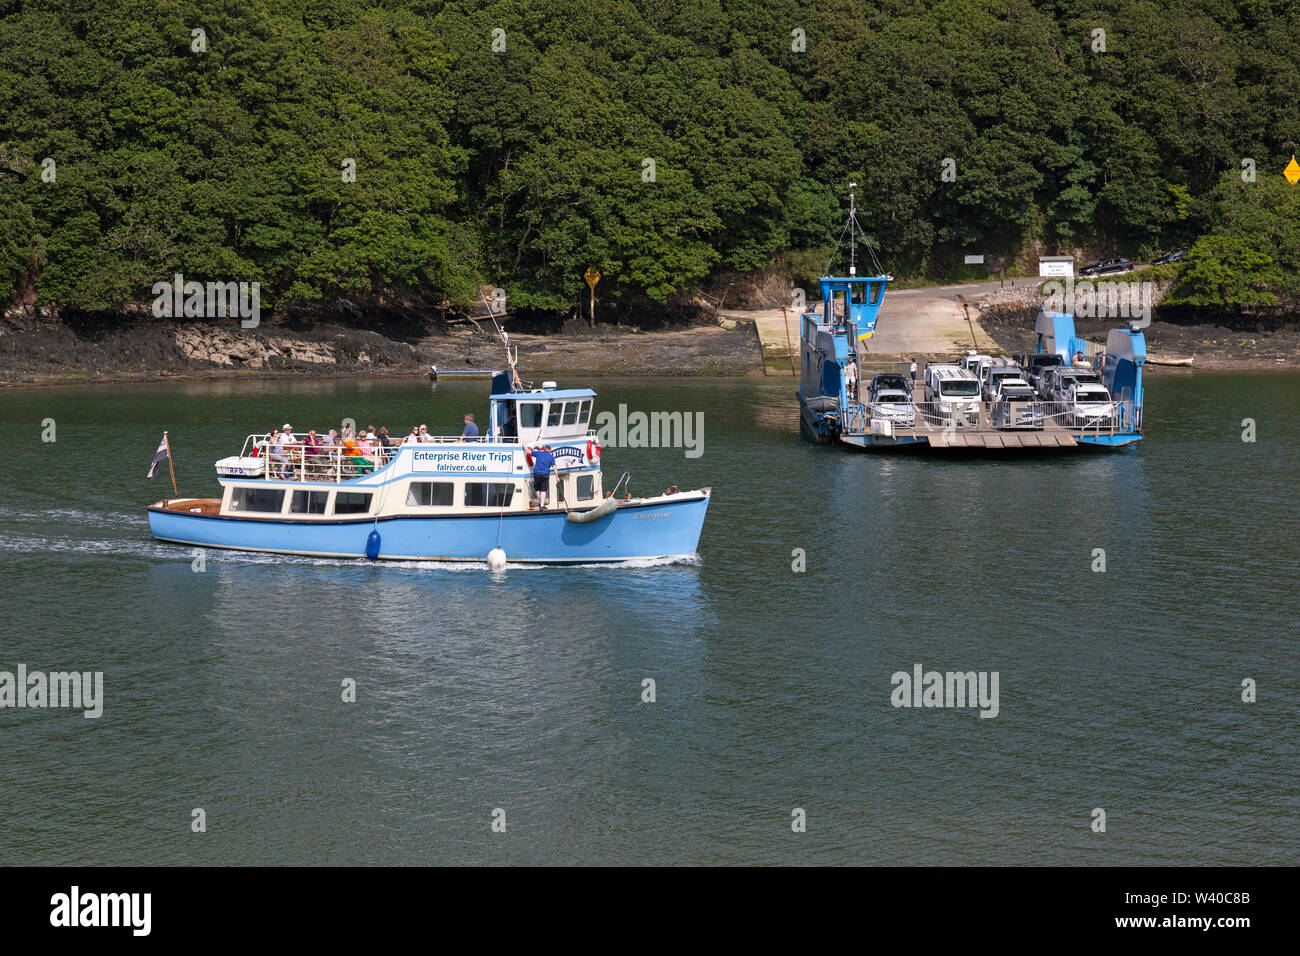 El rey Harry cadena vehicular ferry, y una empresa, viajes en barco, barco de pasajeros en el río Fal EstuaryCornwall, Inglaterra. Foto de stock